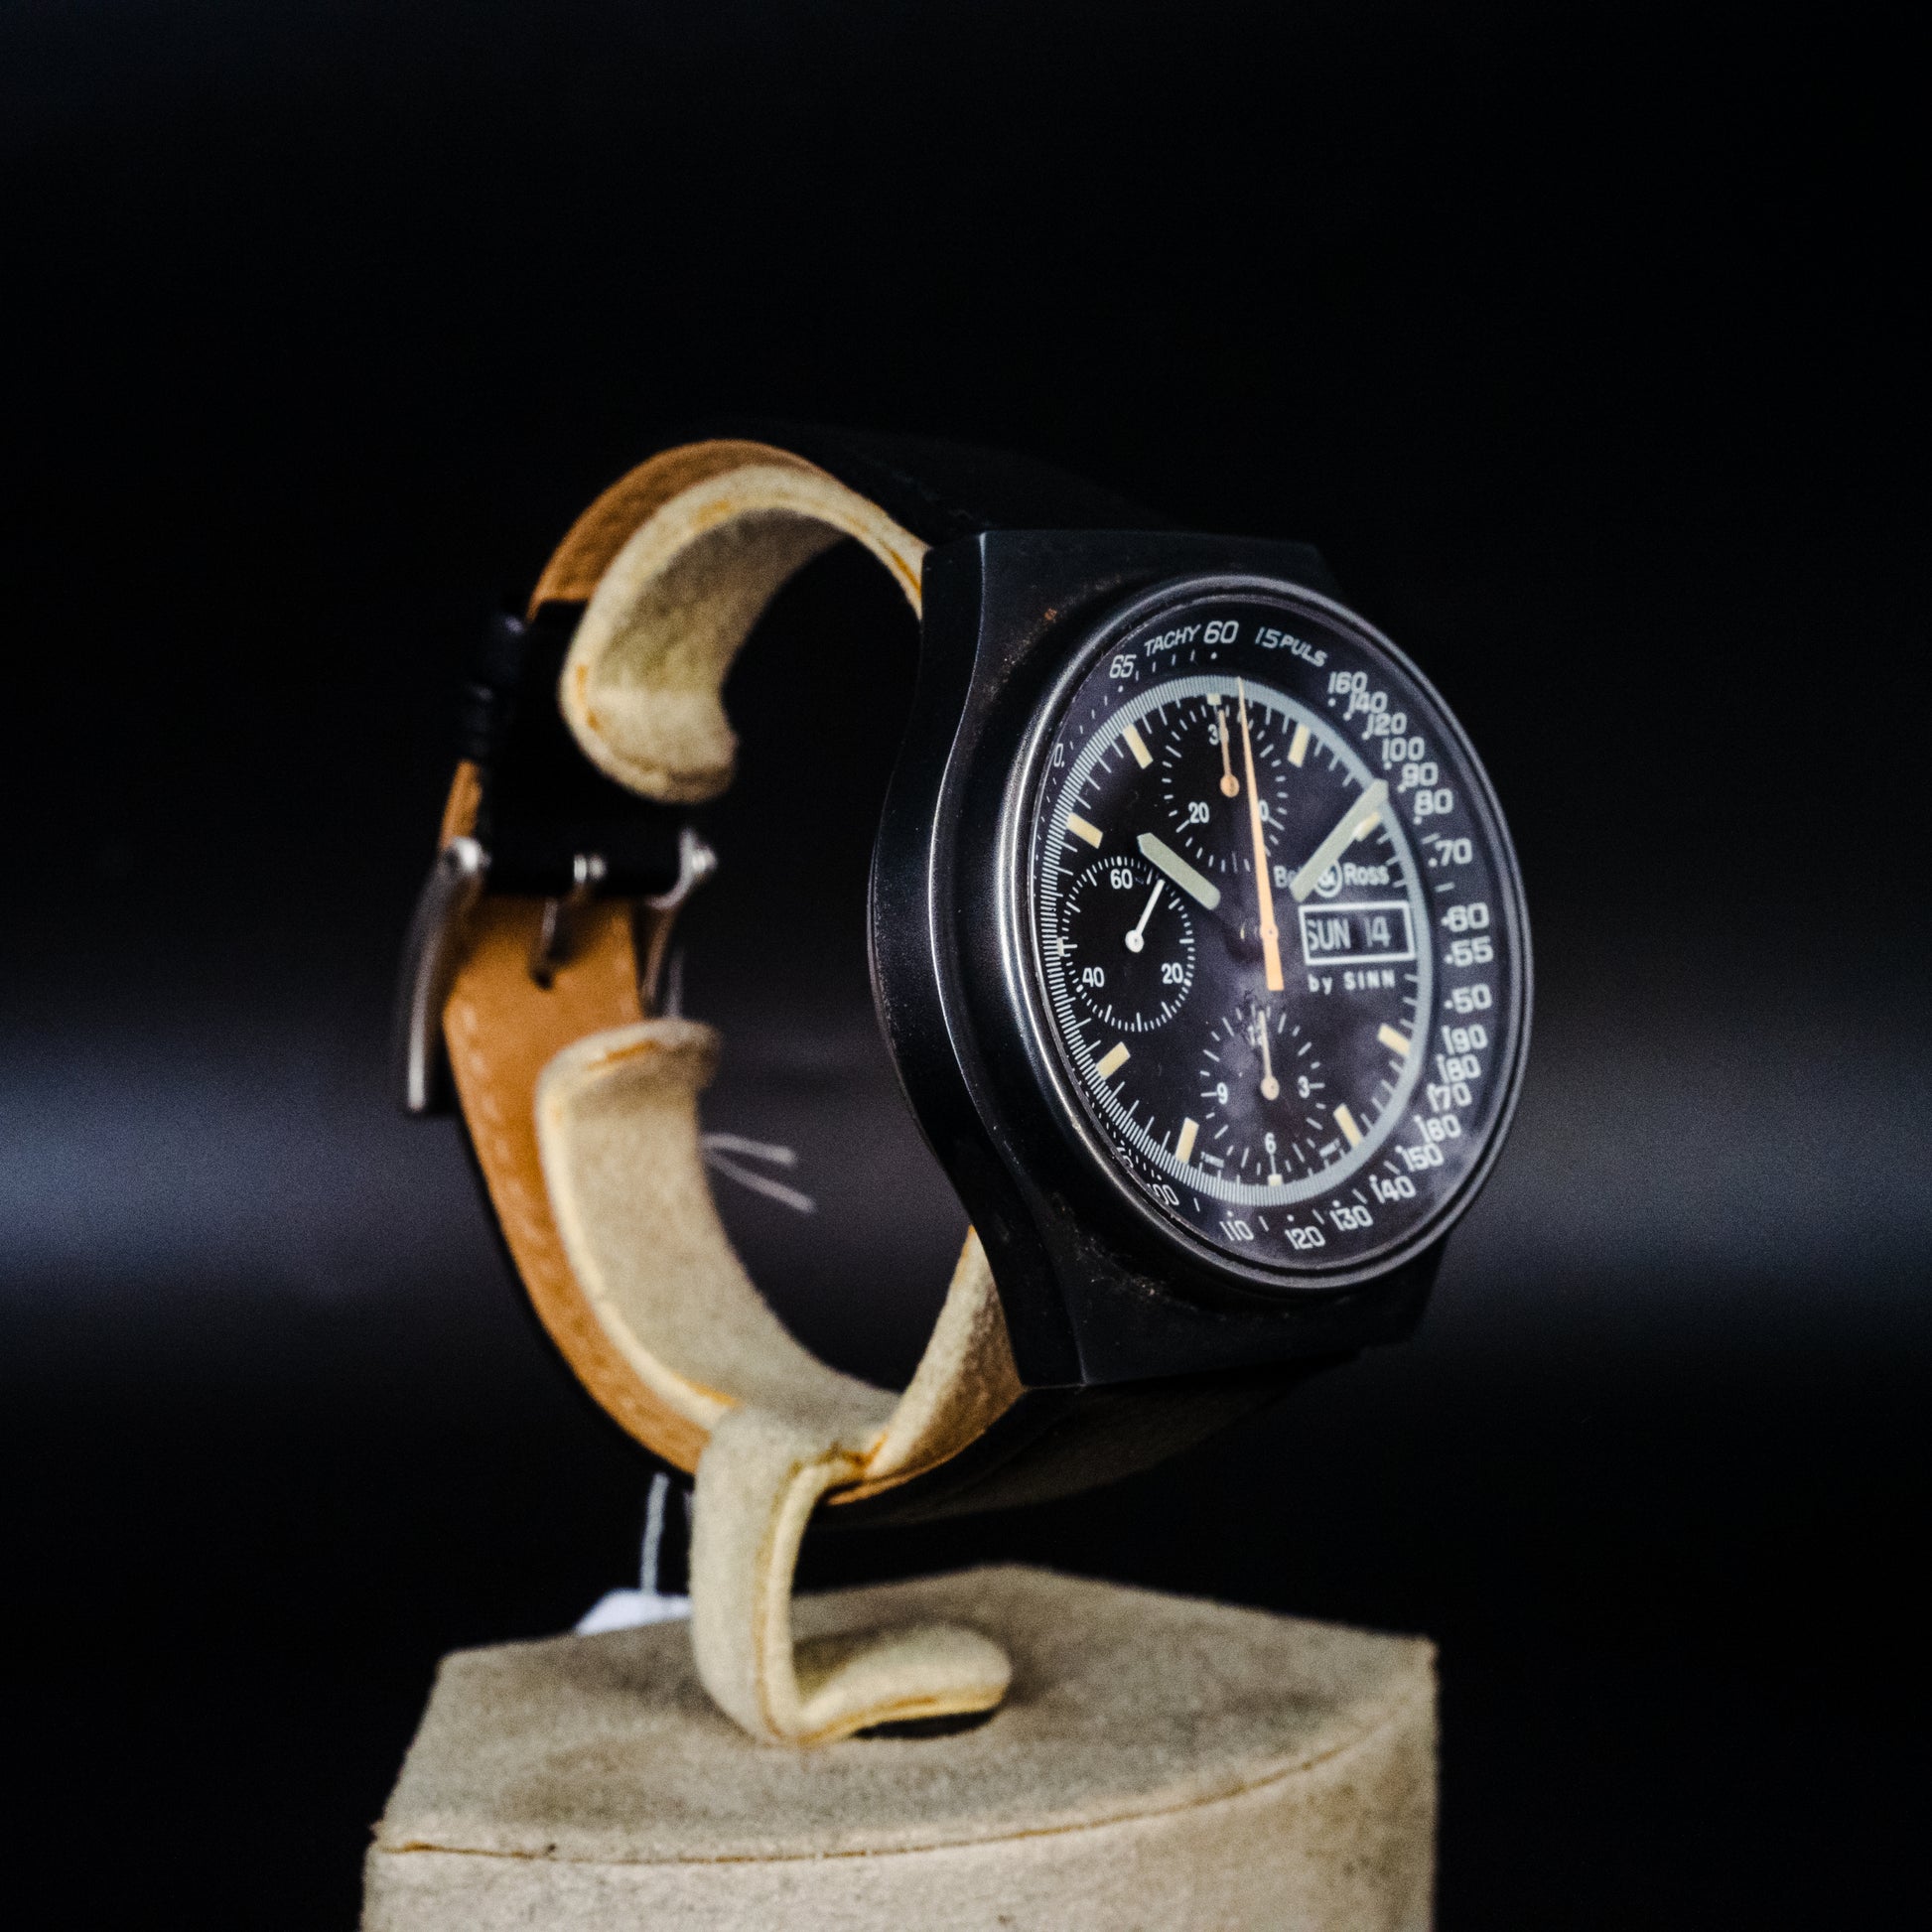 Chronographe Bell et Ross by Sinn - L'Atelier du Temps